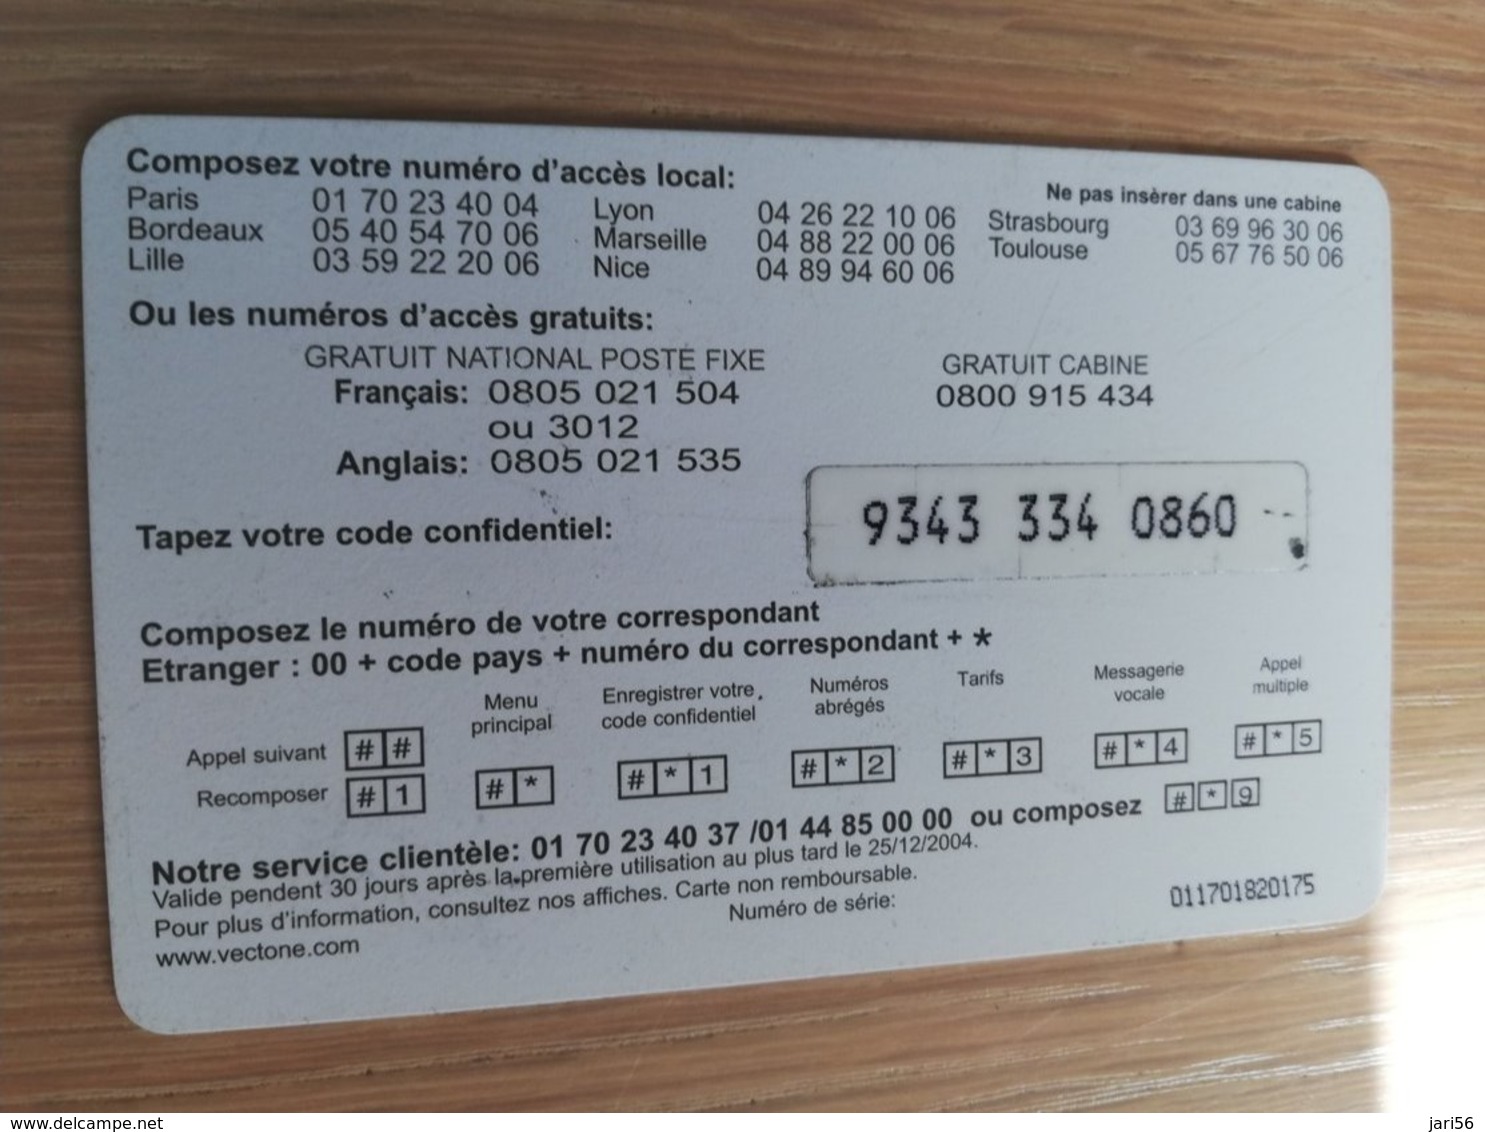 FRANCE/FRANKRIJK   FIXE 2 MOBIL € 7,5   PREPAID  USED    ** 1497** - Prepaid: Mobicartes